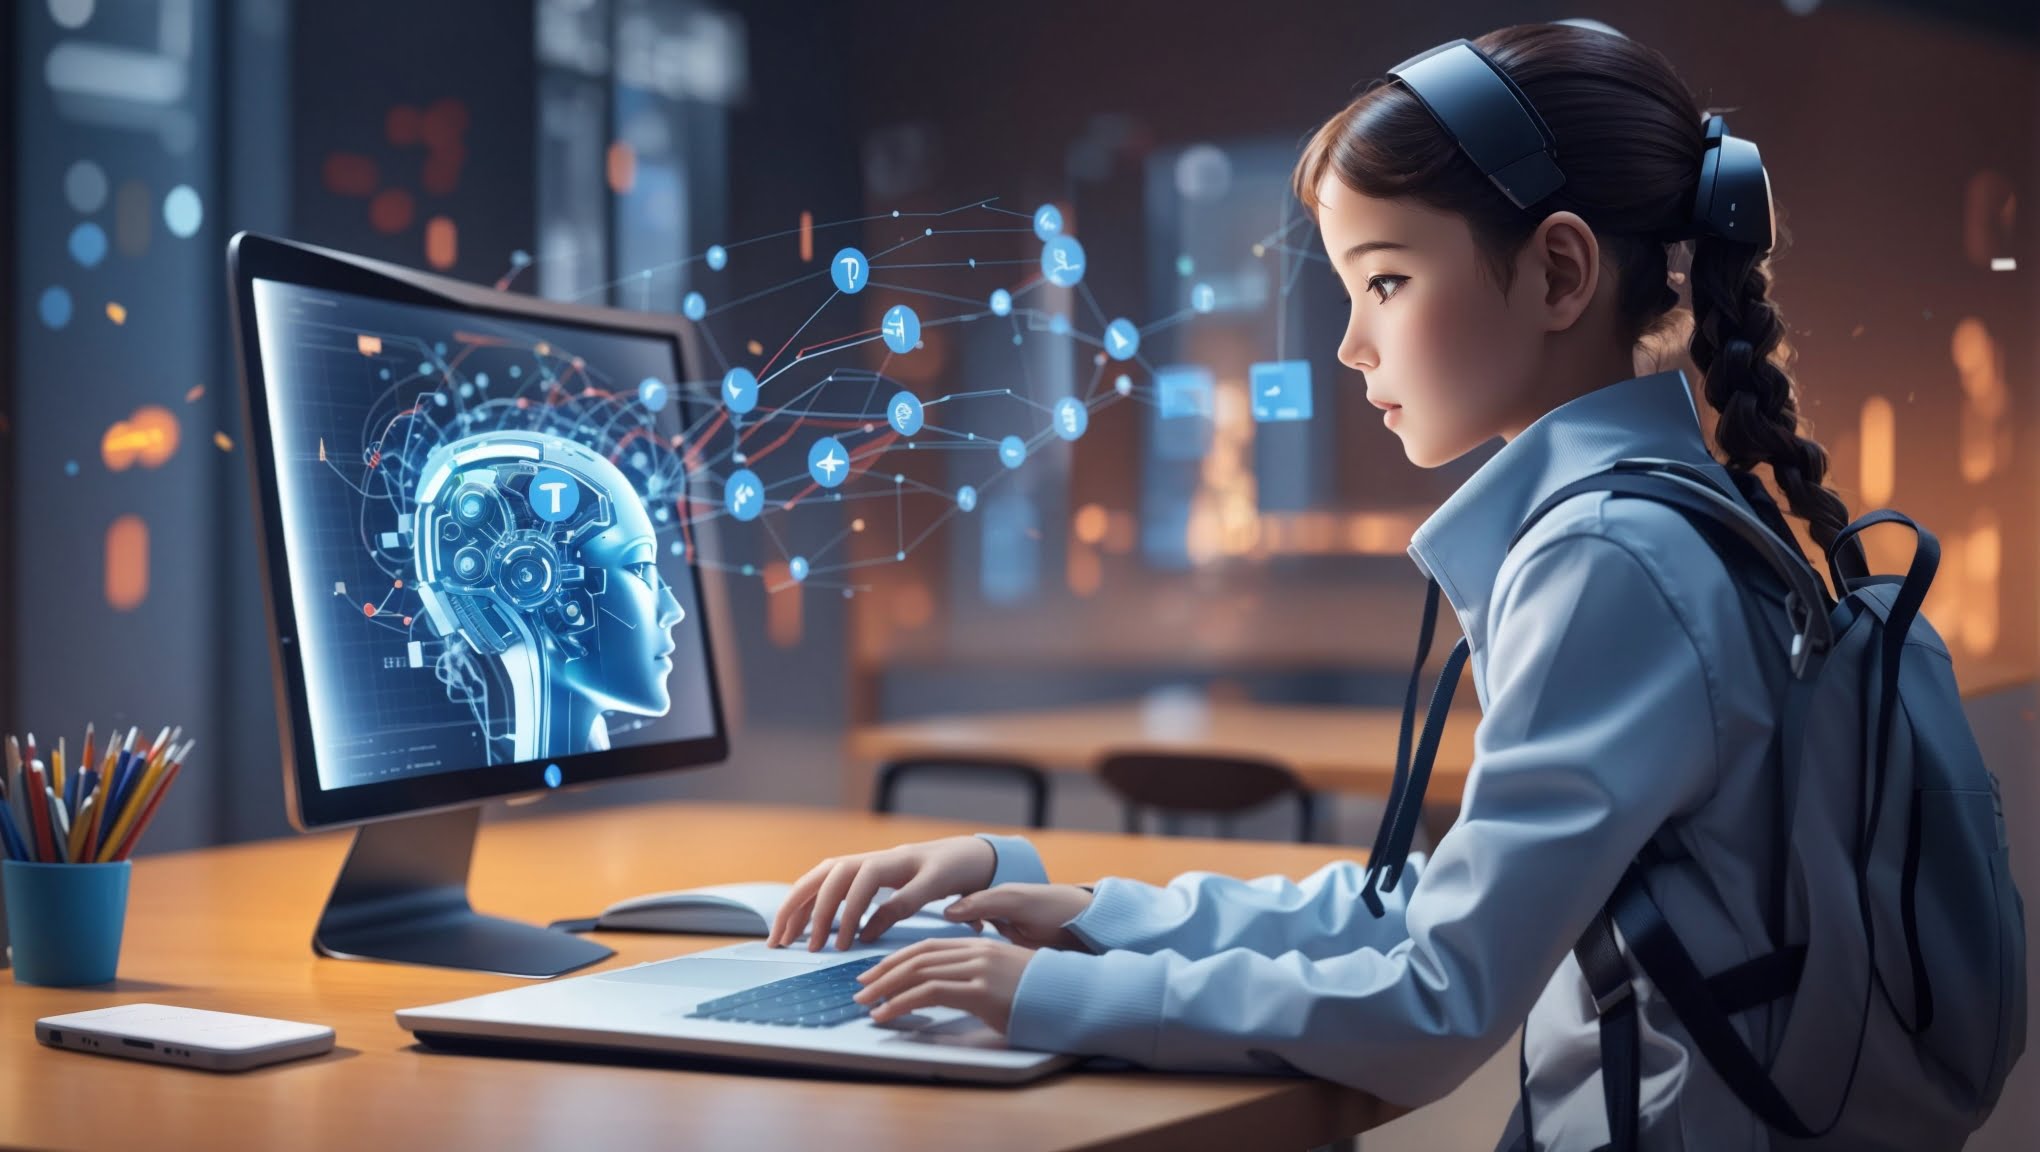 Future of AI in Education